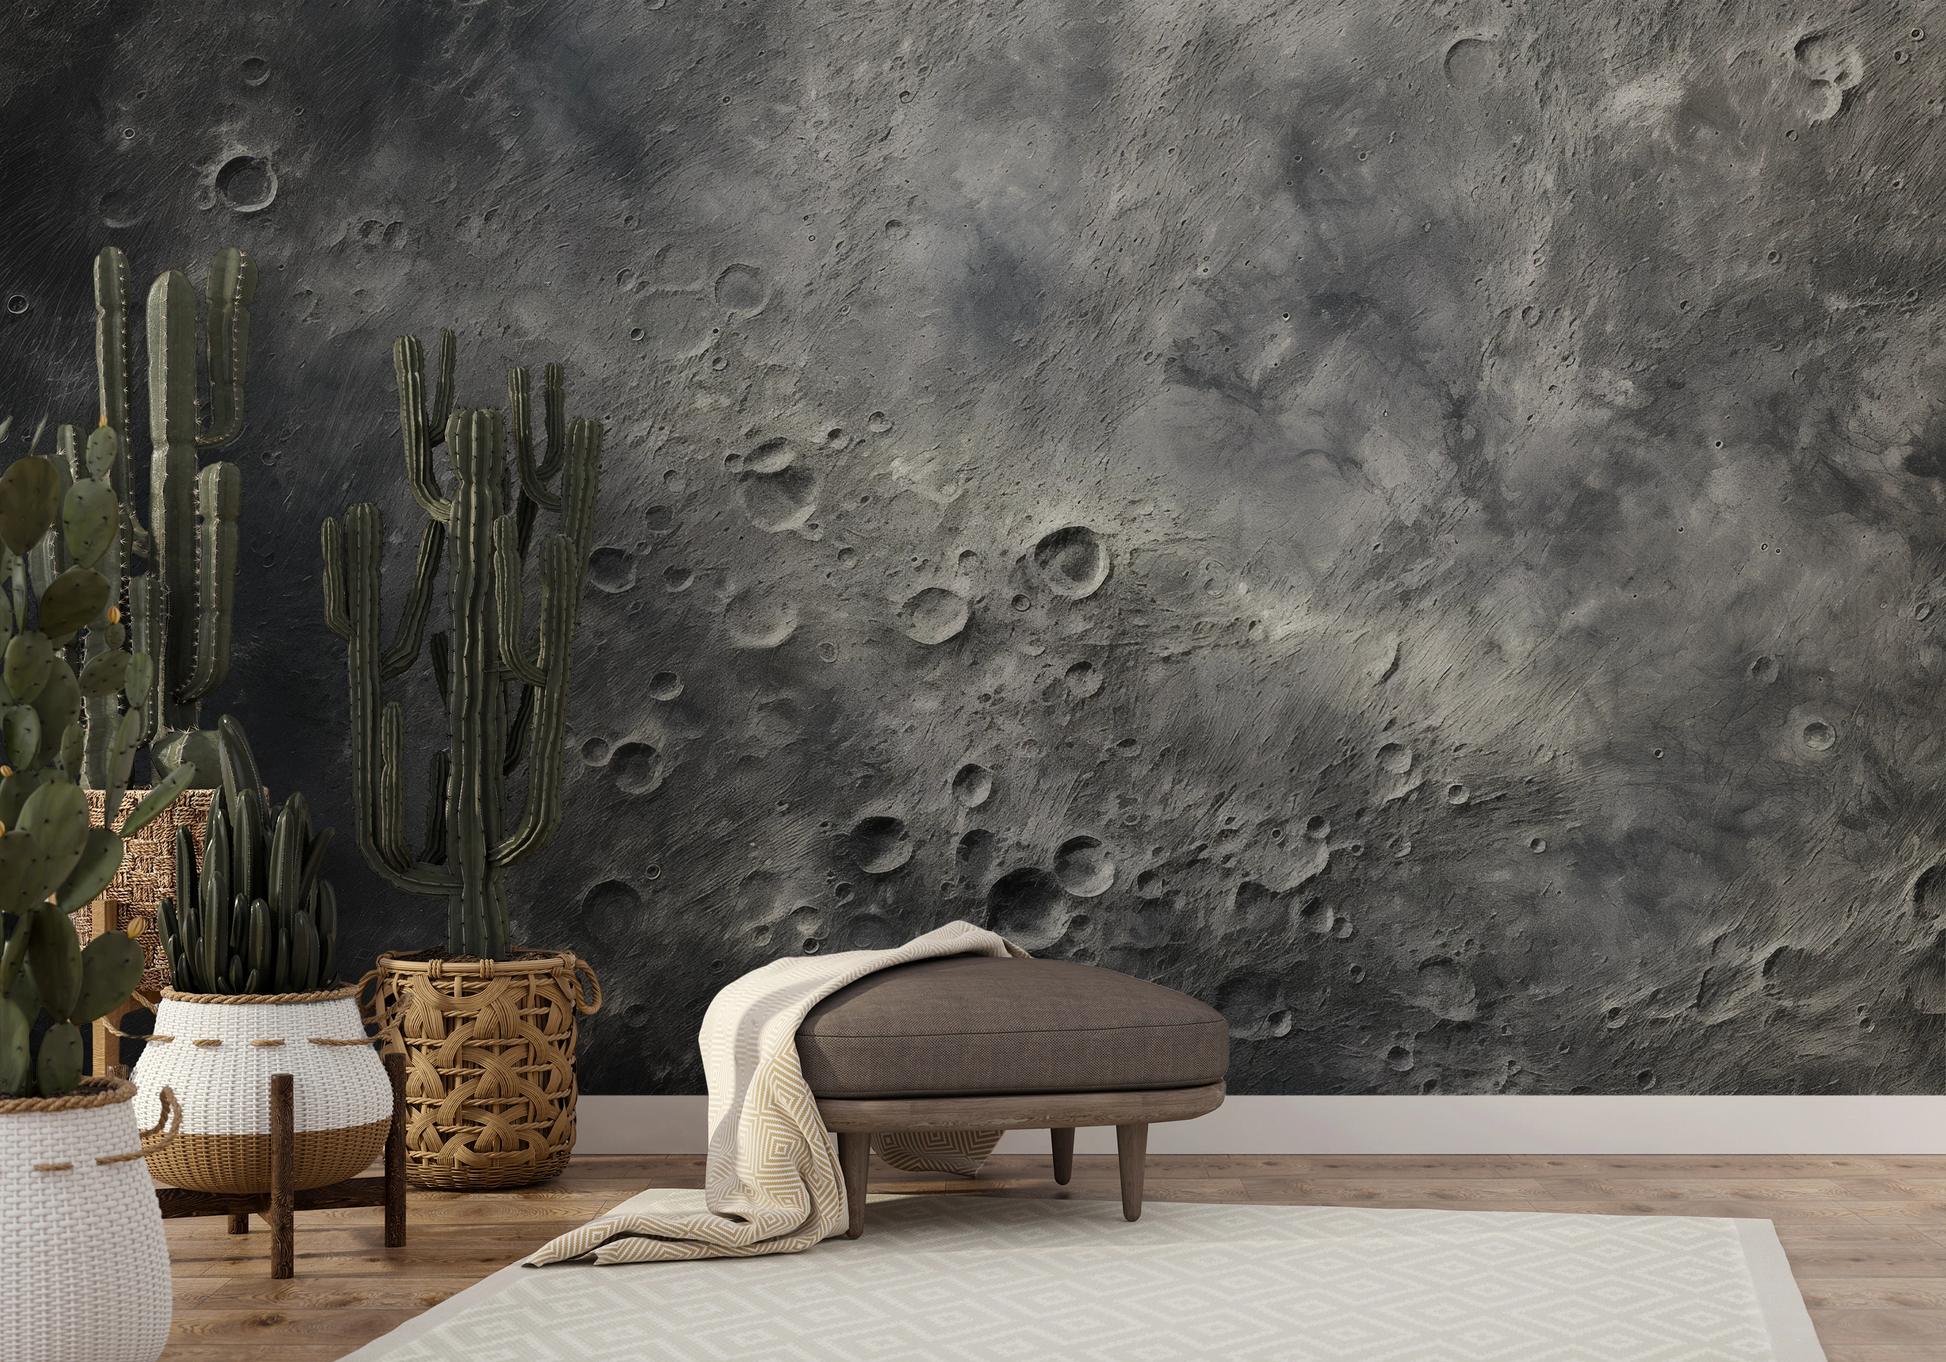 Wzór fototapety malowanej o nazwie Moon's Monochrome 2 pokazanej w aranżacji wnętrza.